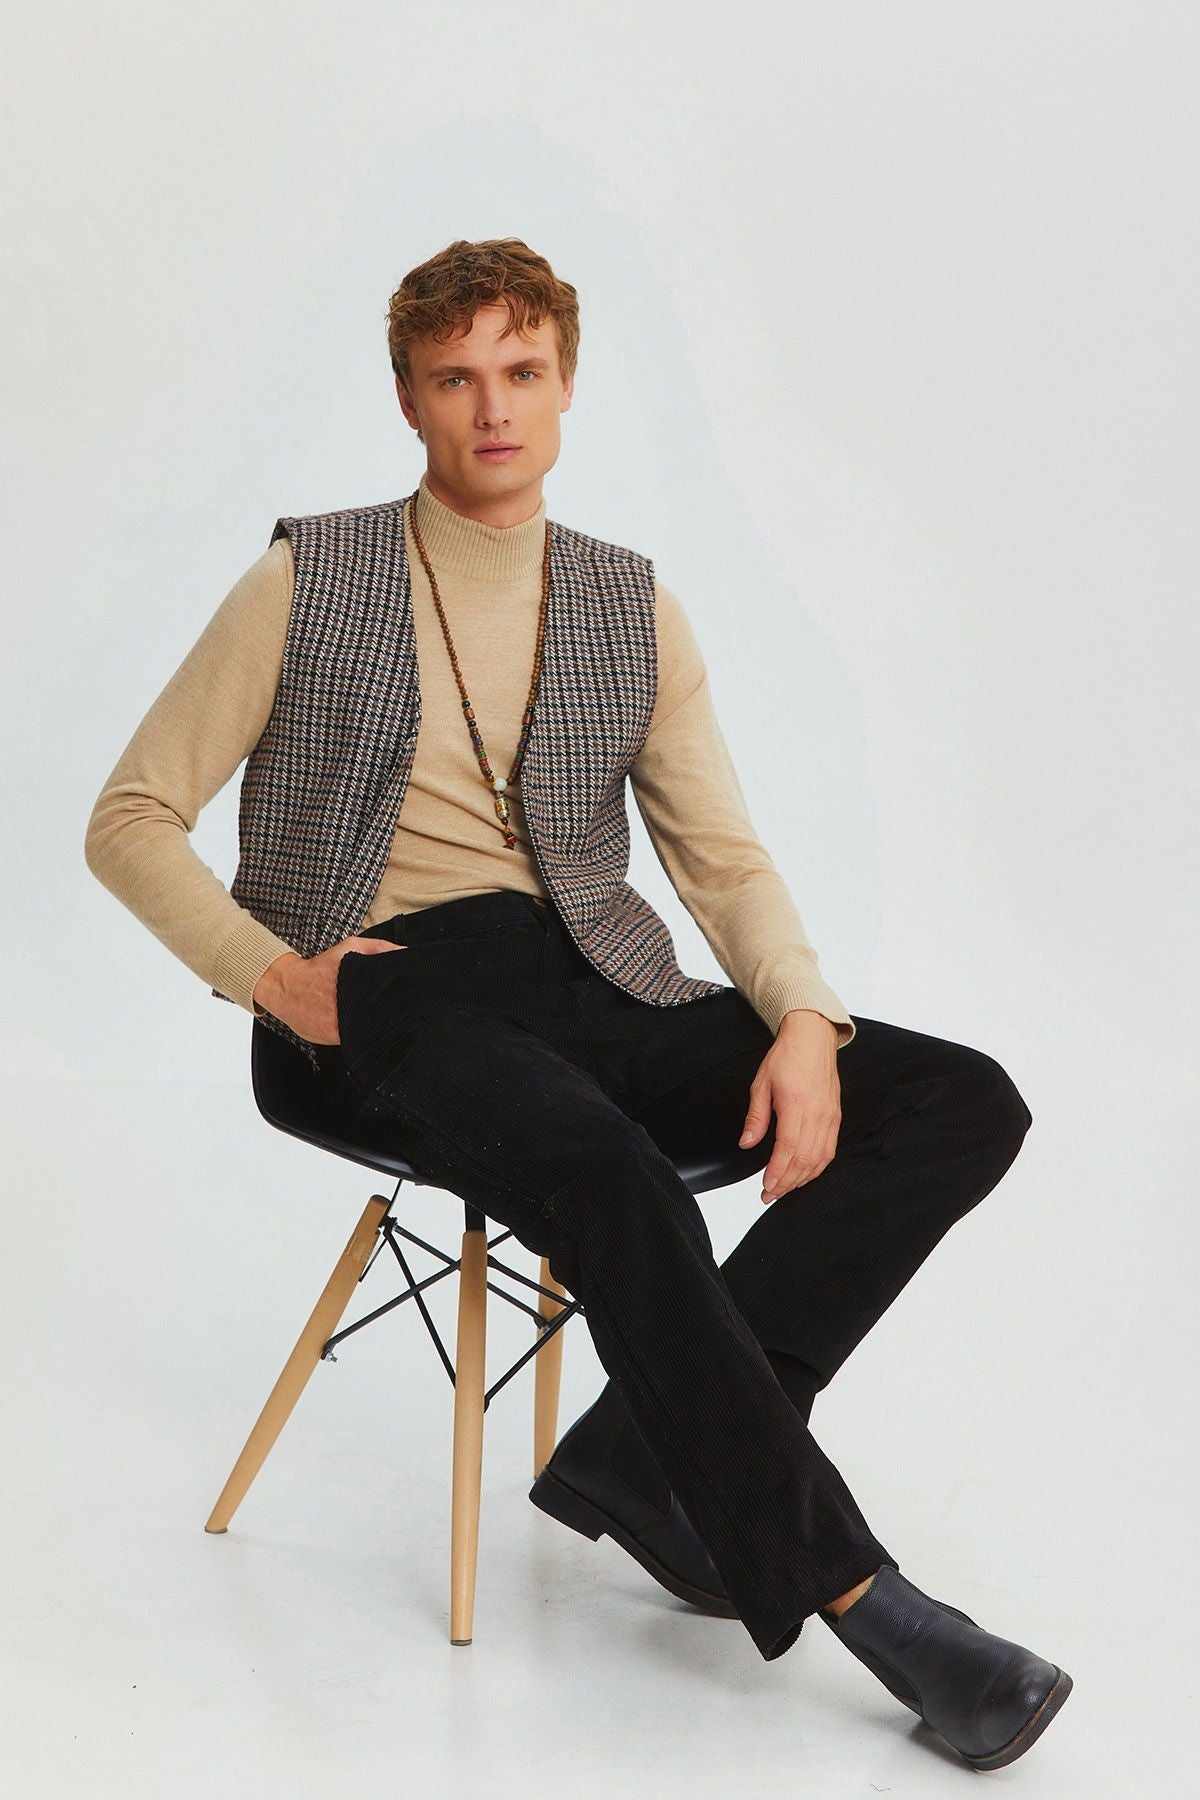 Bohemian Style Classic Cut Men's Vest Gray